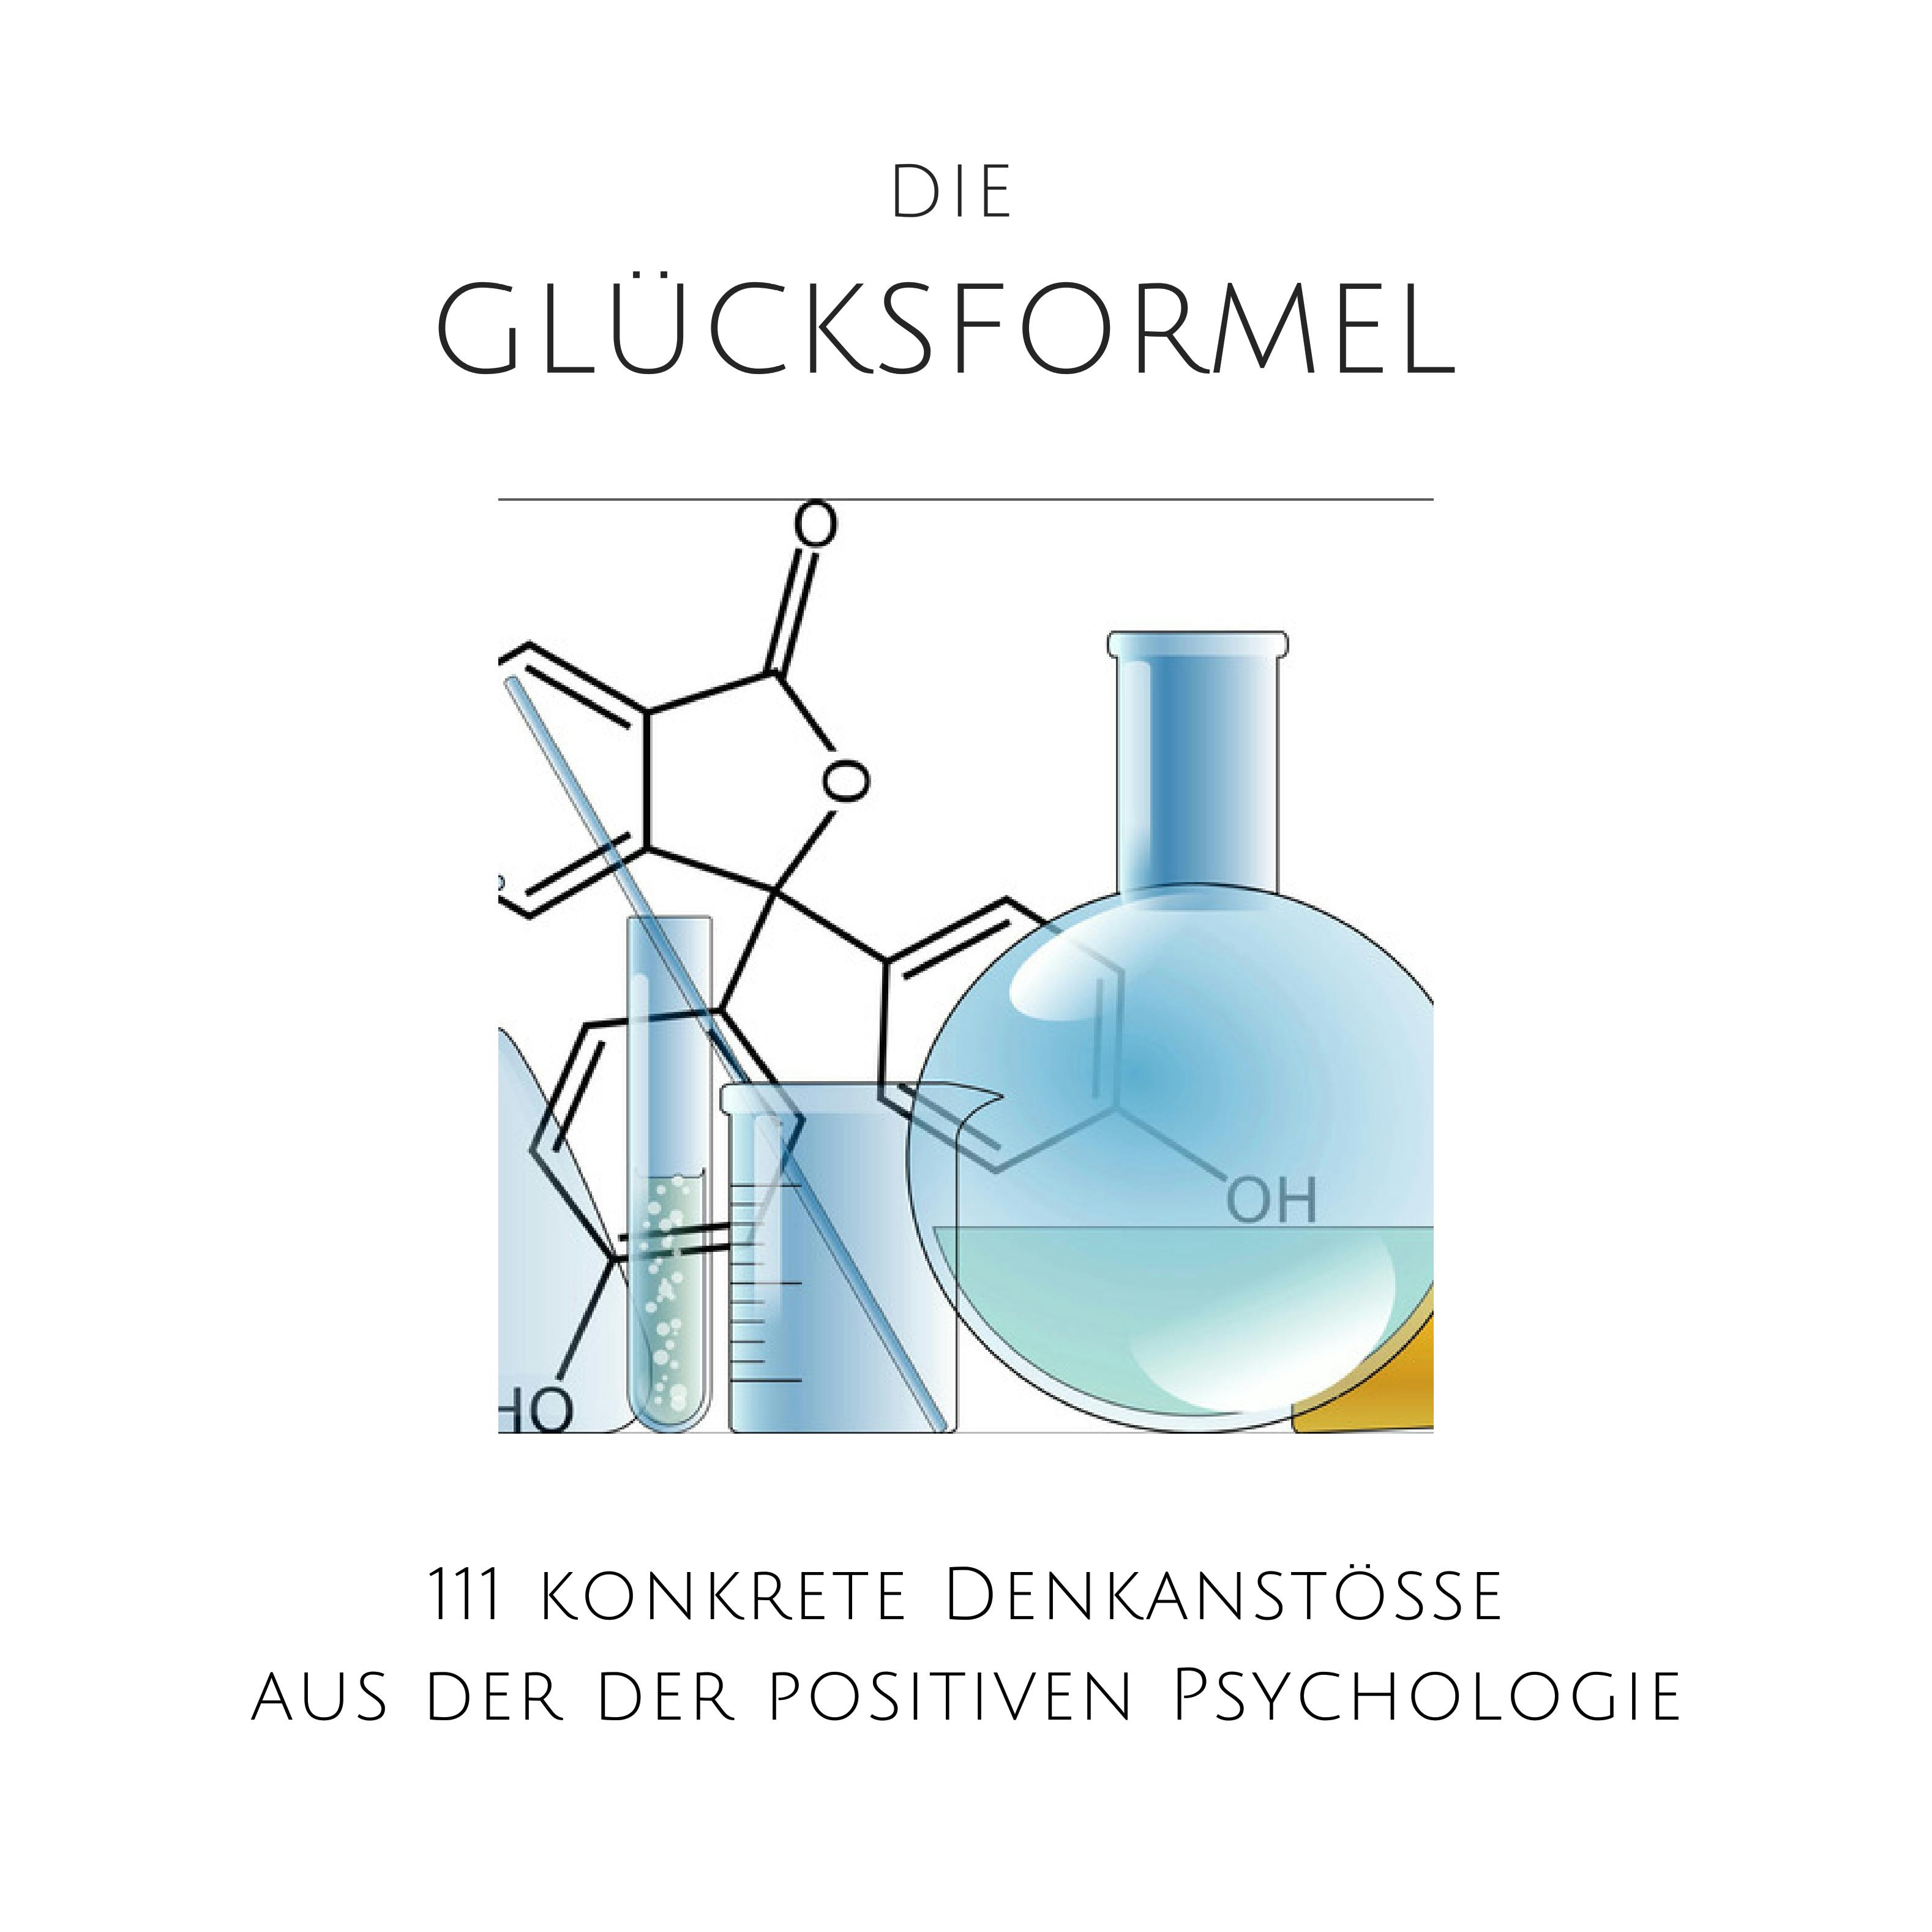 Die Glücksformel: 111 konkrete Denkanstöße aus der positiven Psychologie: Glück, Zufriedenheit, Erfolg, Optimismus, Geborgenheit, Vertrauen, positives Denken - undefined